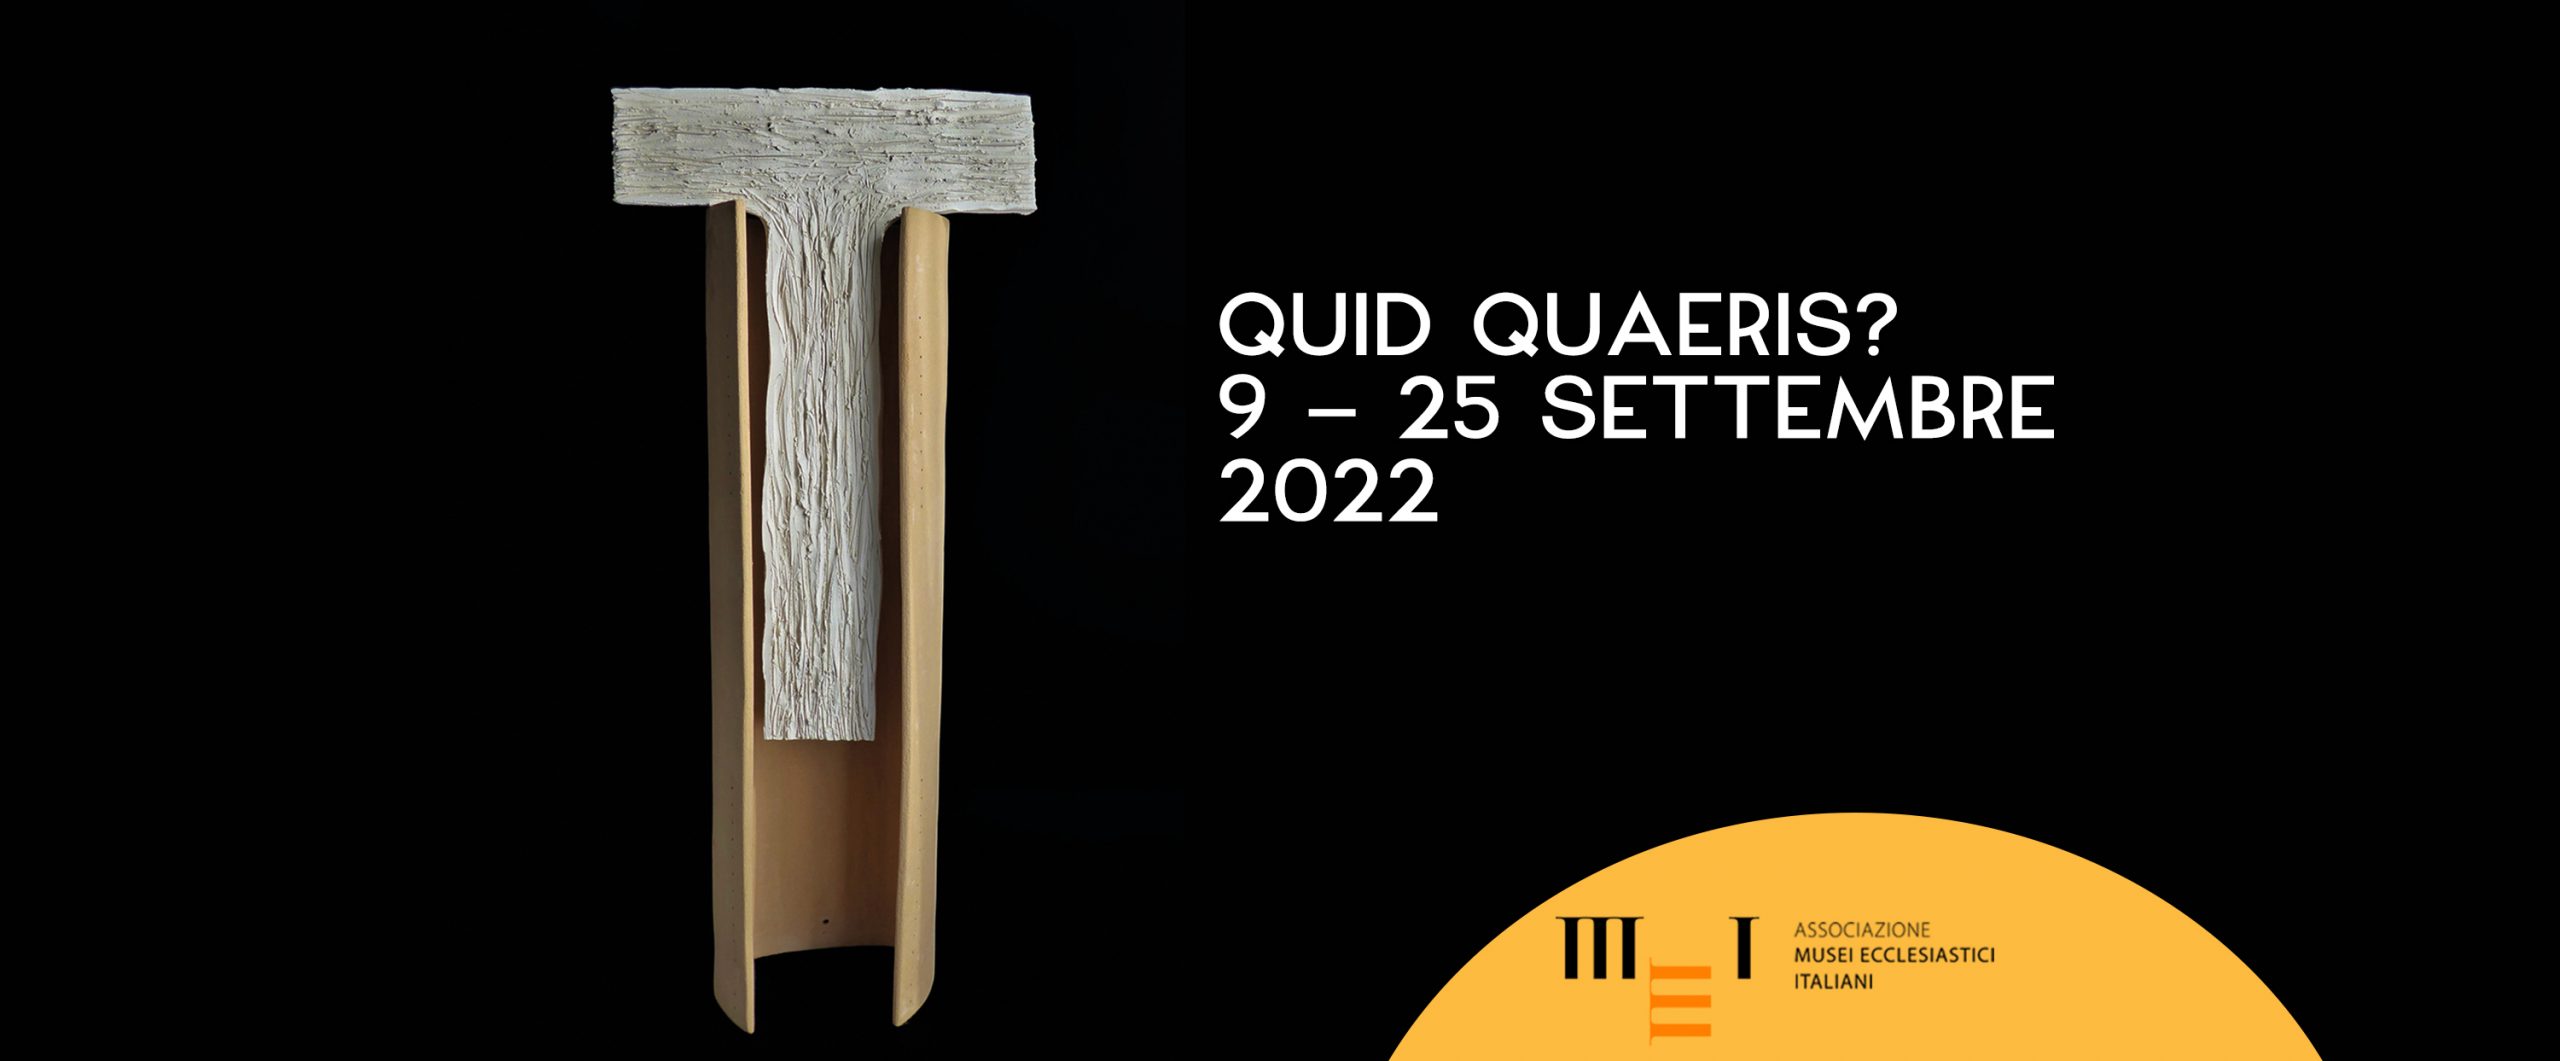 Quid Quaeris - 9-22 settembre 2022, al Museo Diocesano Faenza